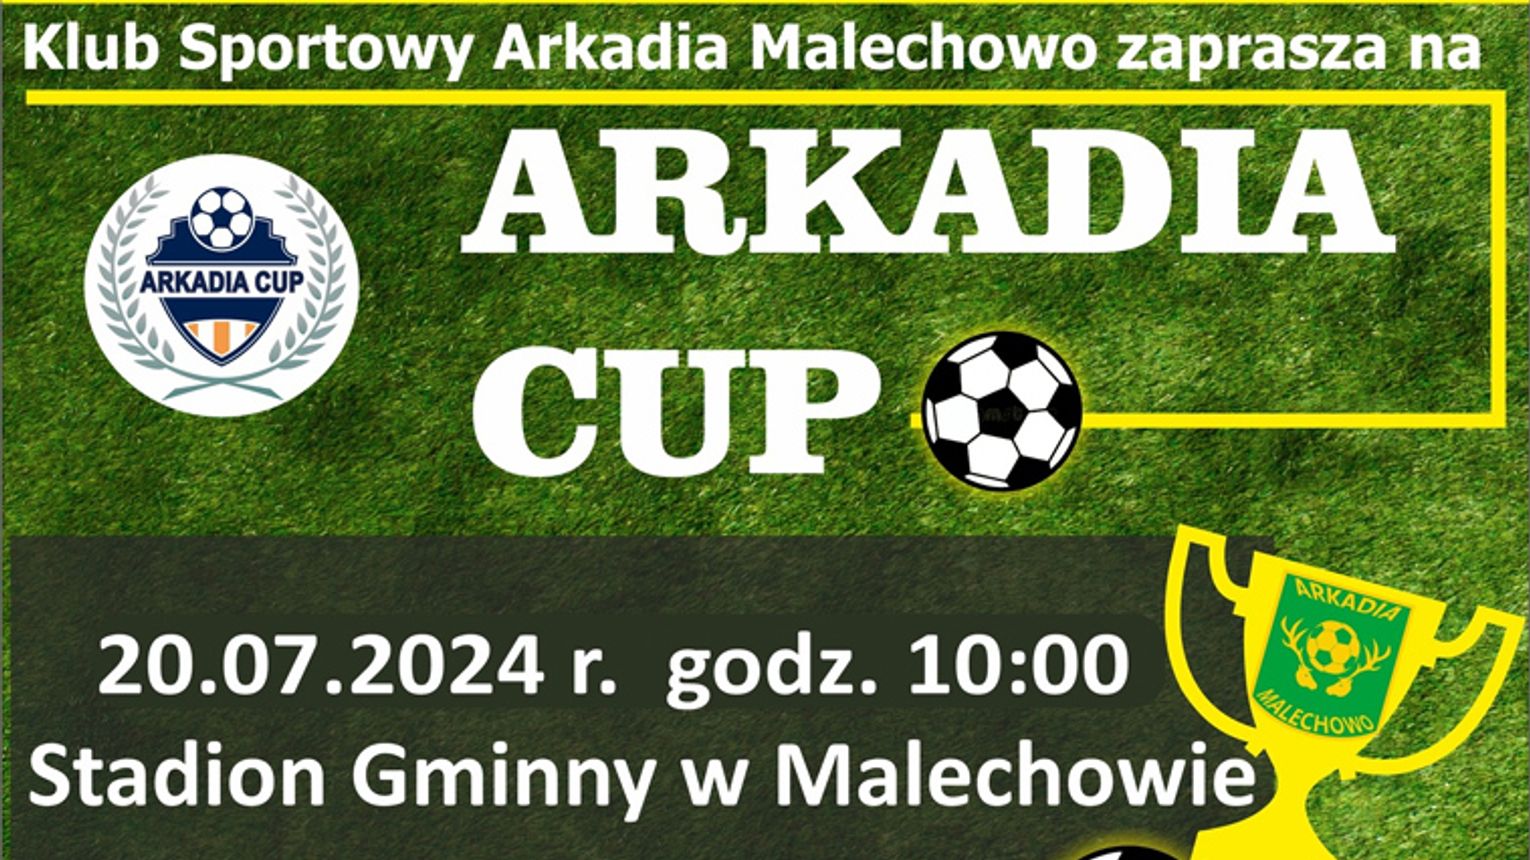 Malechowo: KS Arkadia Malechowo zaprasza na turniej Arkadia Cup